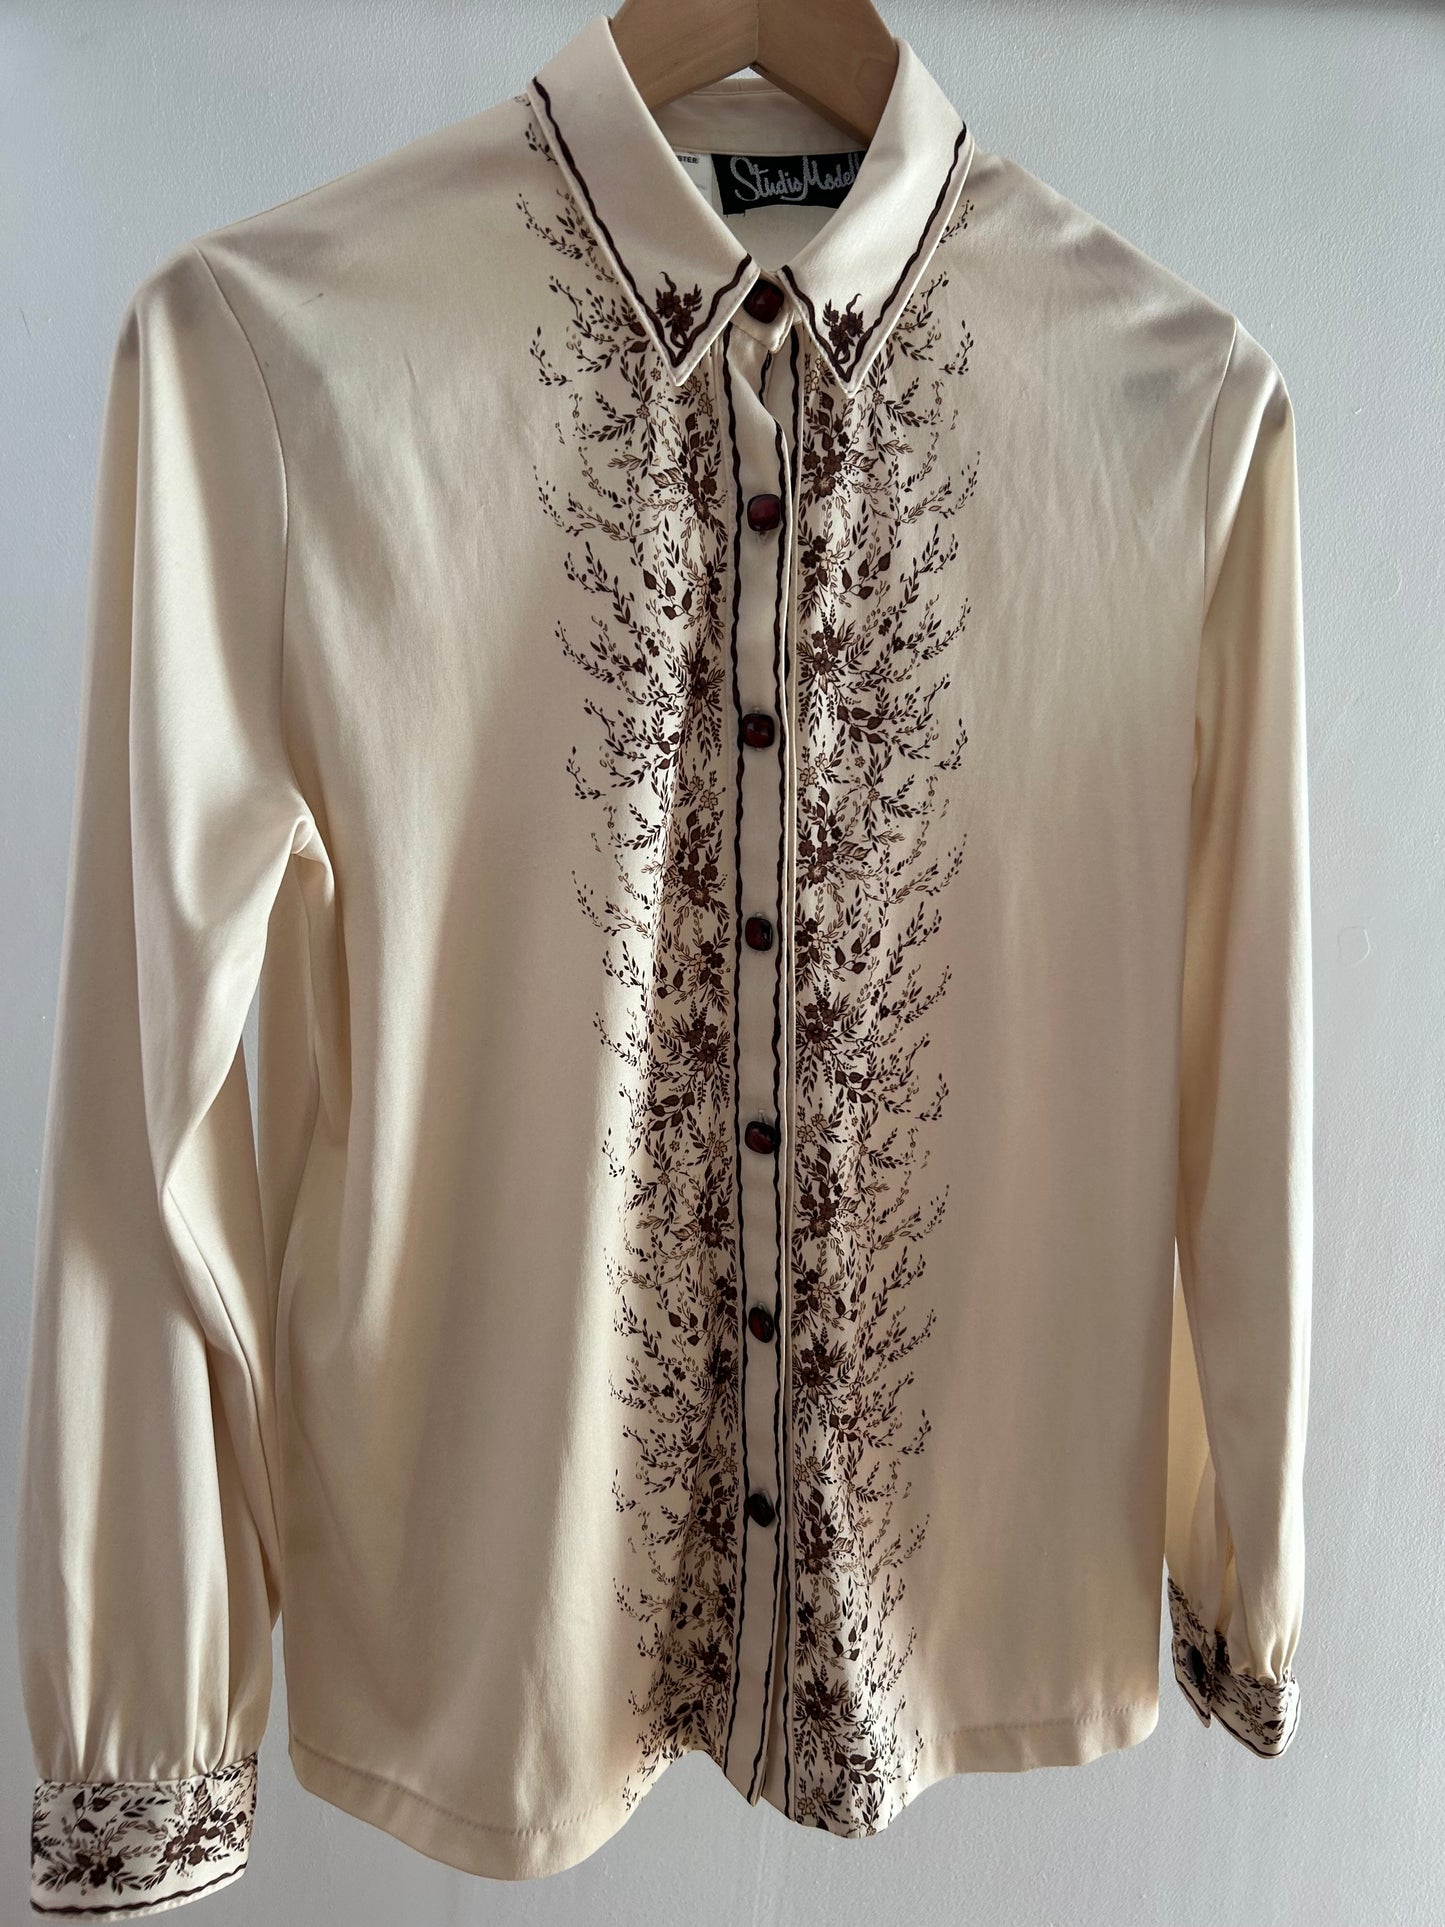 Vintage 1970s STUDIO MODELLE UK Size 12 Cream & Brown Floral & Leaf Print Long Sleeve Shirt